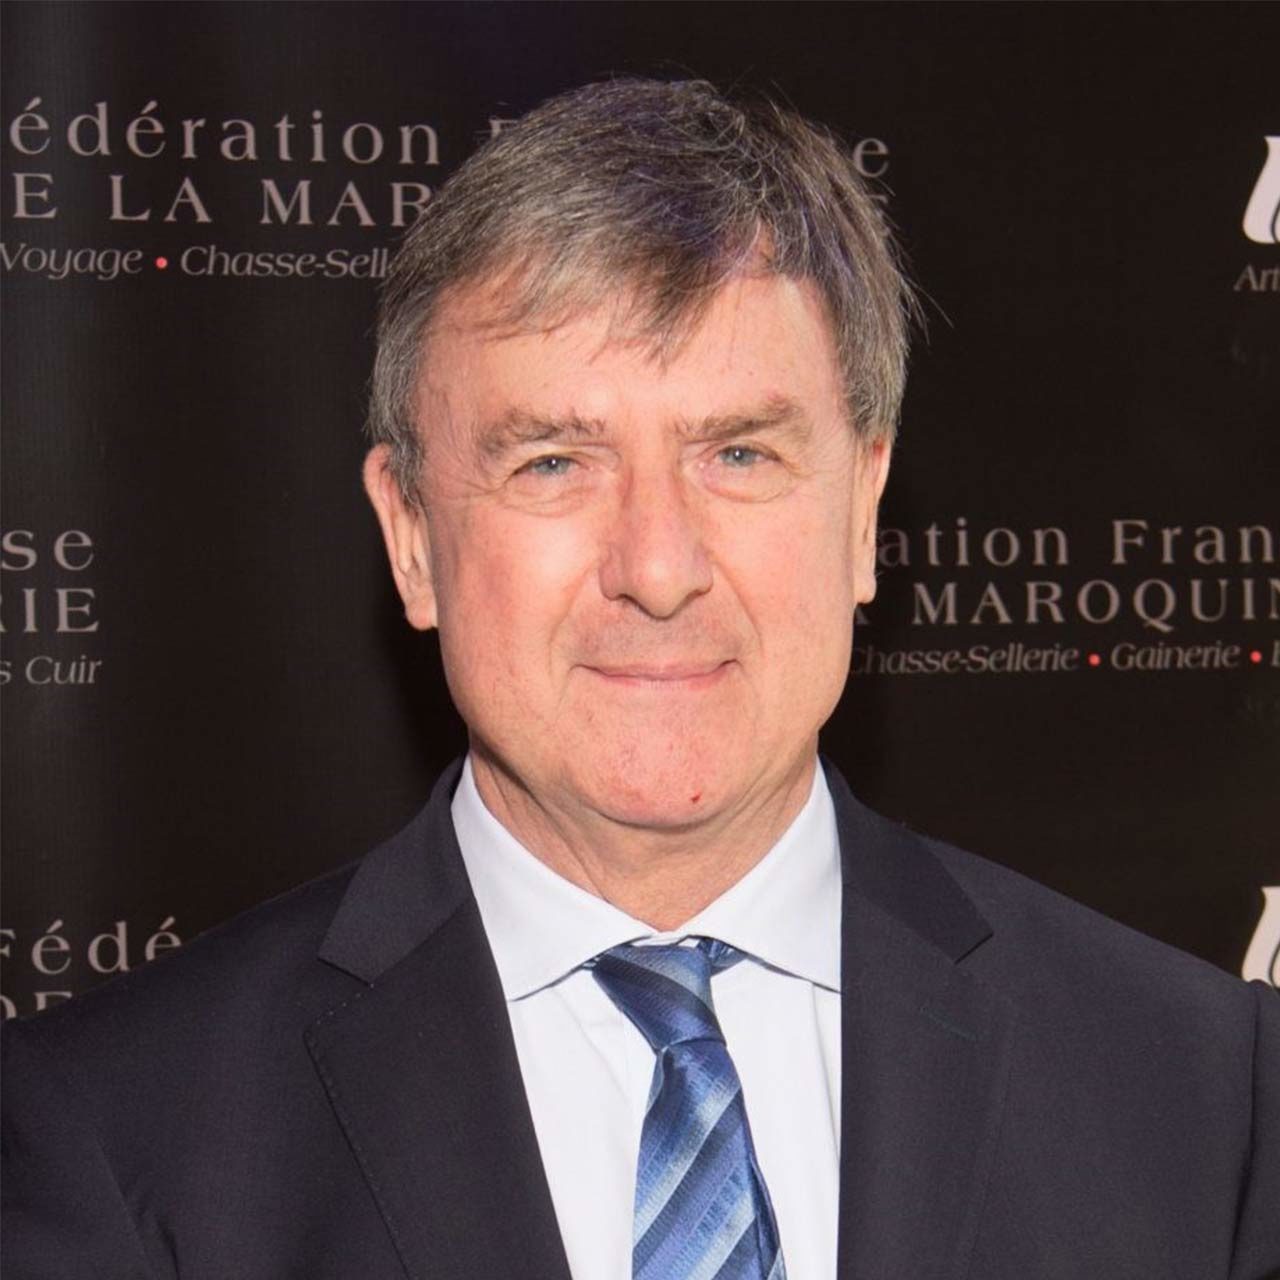 Edgard-Schaffhauser-Président-Exécutif Fédération Française Maroquinerie